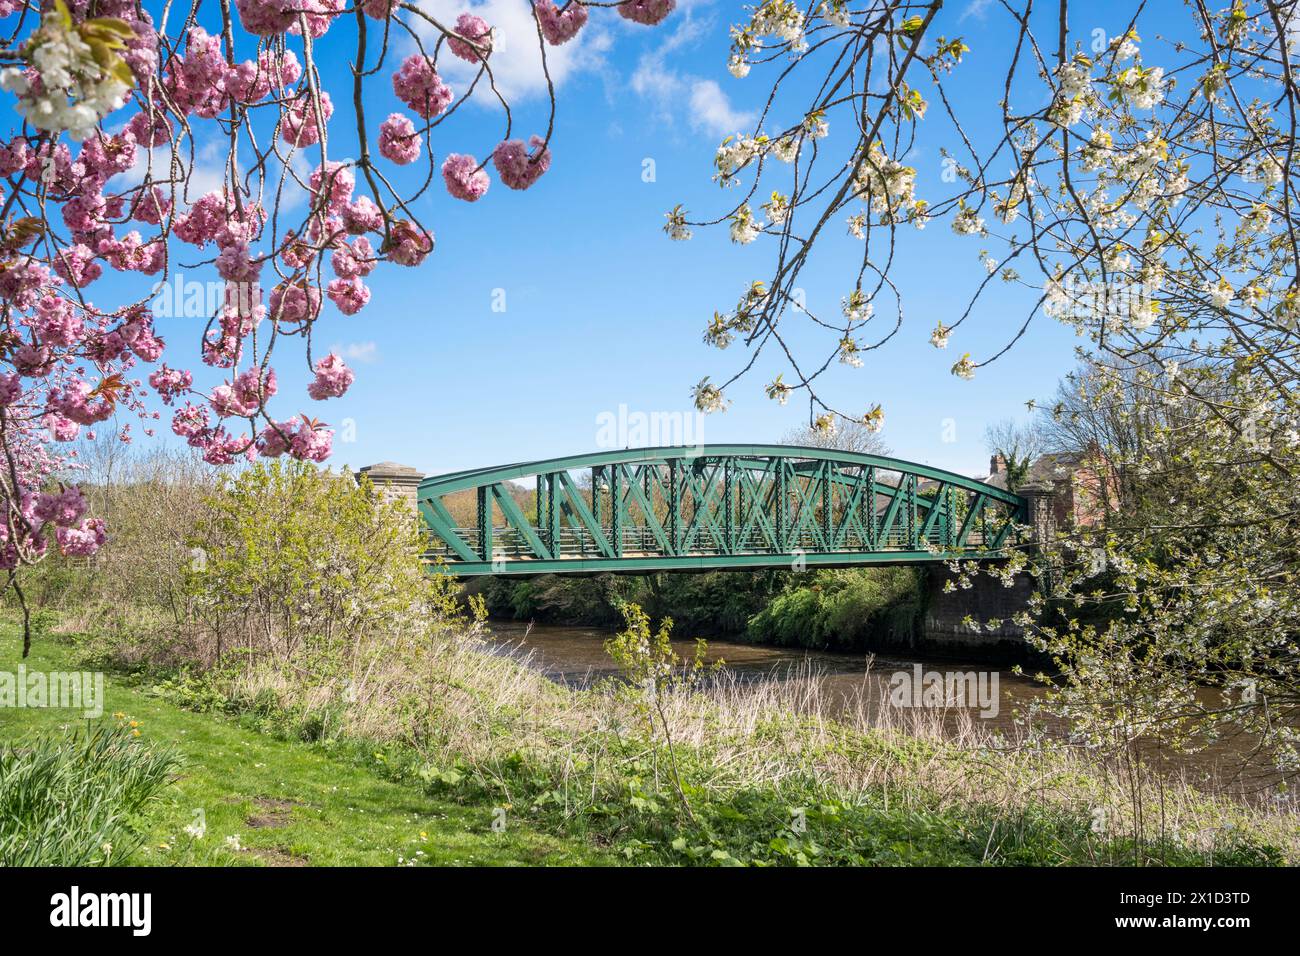 Frühlingssonne und Kirschblüte, die die Fatfield Bridge in Washington, England, Großbritannien umrahmt Stockfoto